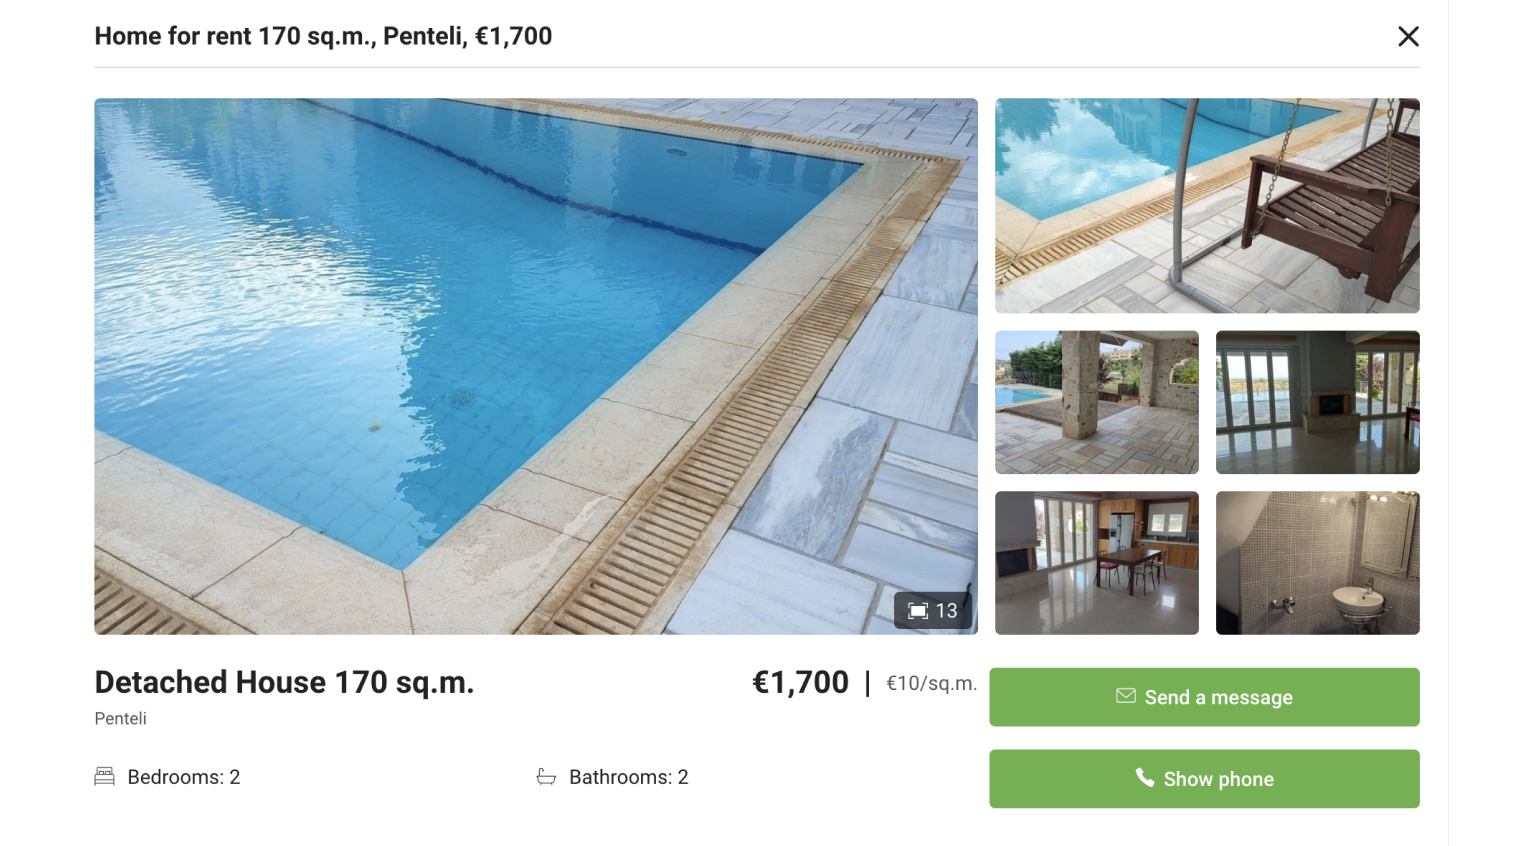 Дом 170 м² с бассейном и двумя спальнями и ванными за 1700 € в месяц в отдаленном, но красивом районе Северных Афин. Источник: xe.gr